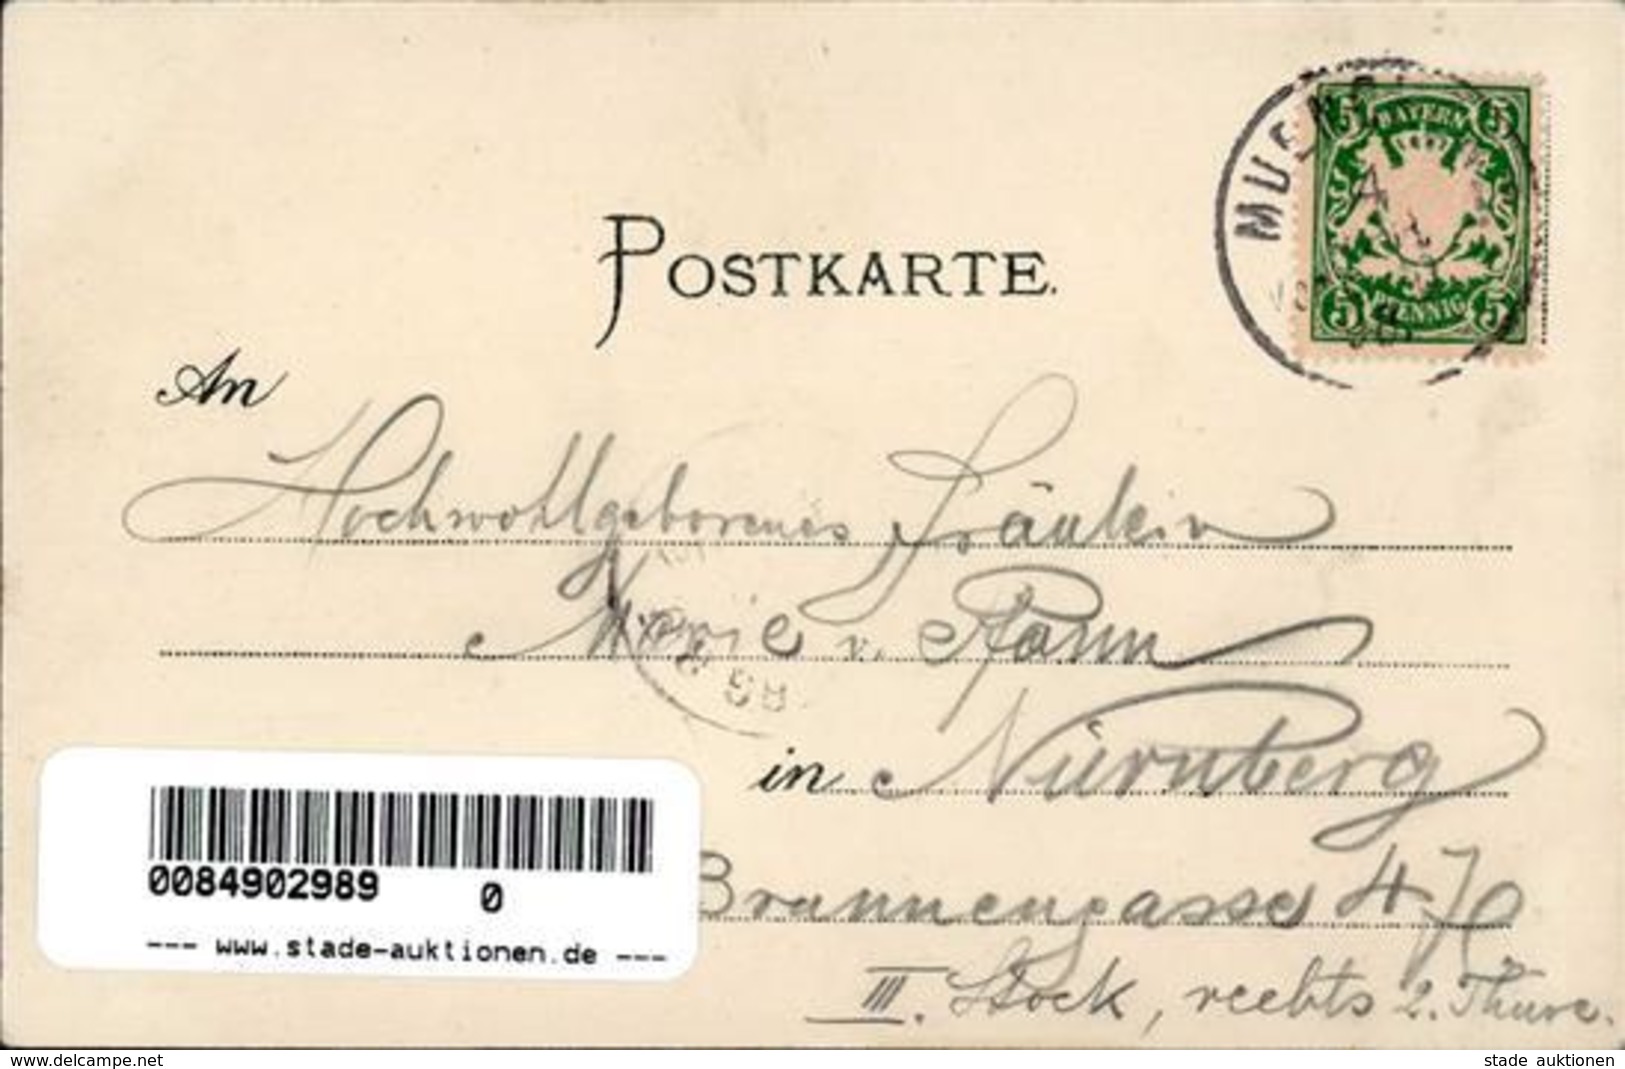 Berggesicht Berchtesgarden Künstlerkarte 1898 I-II - Märchen, Sagen & Legenden